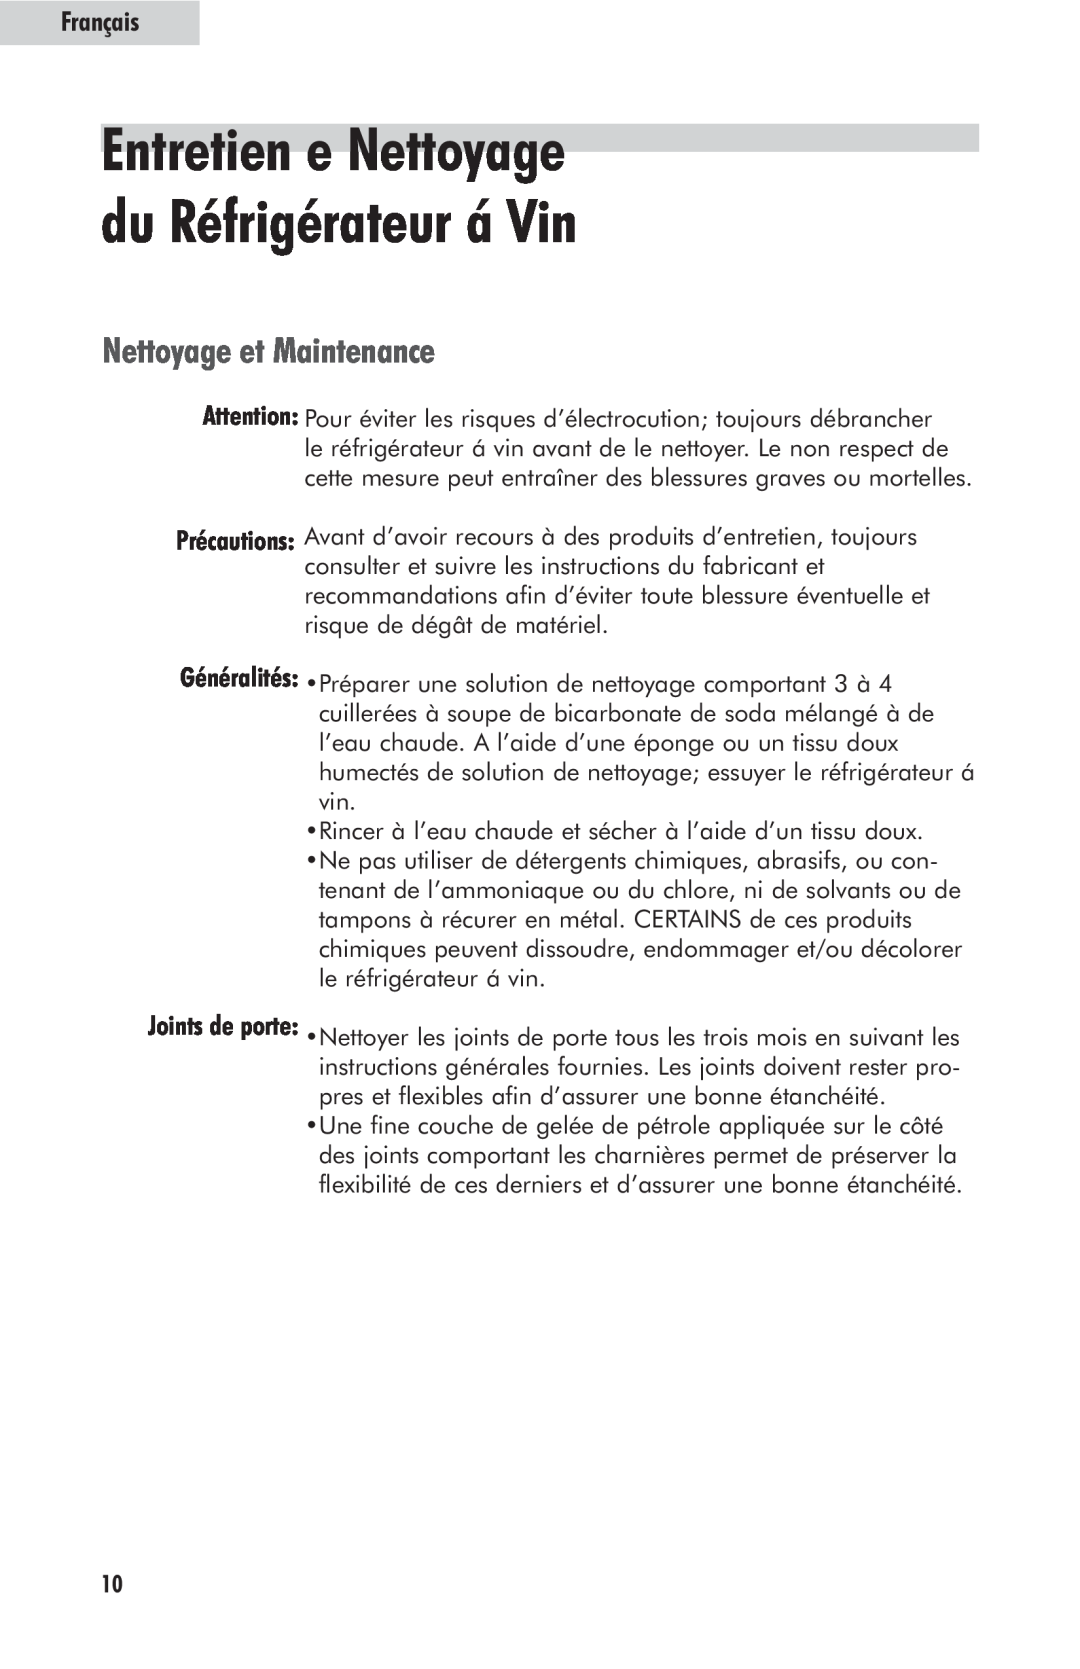 Haier HVFM24B user manual Entretien e Nettoyage du Réfrigérateur á Vin, Nettoyage et Maintenance, Français 